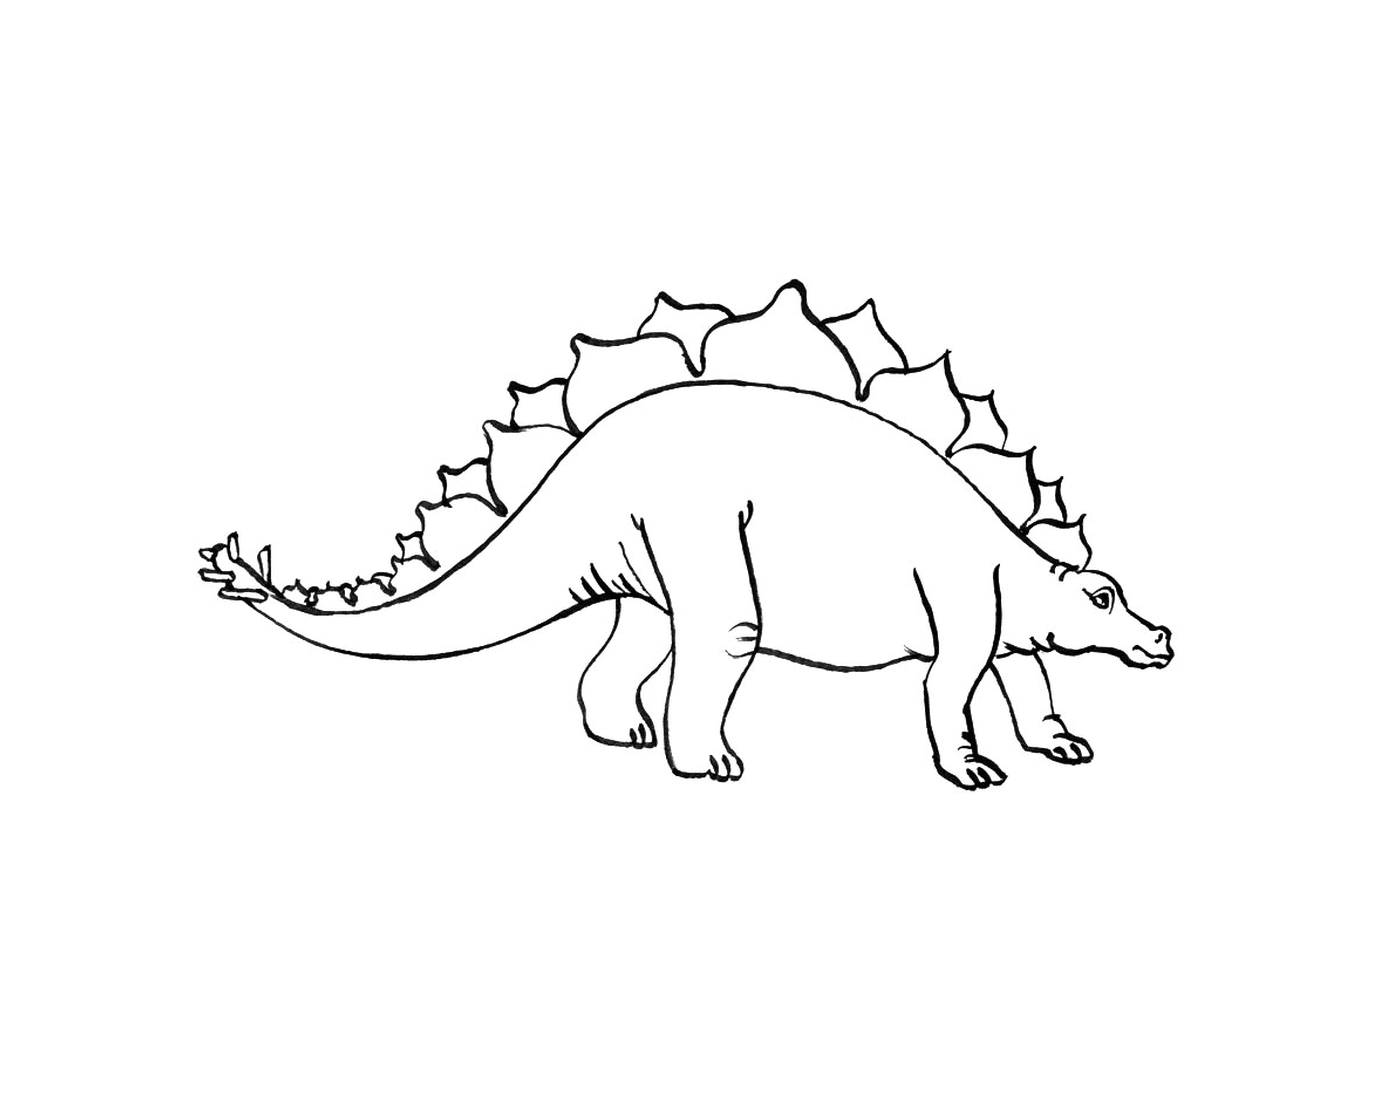  Stegosaure de pie en un dibujo en blanco y negro 